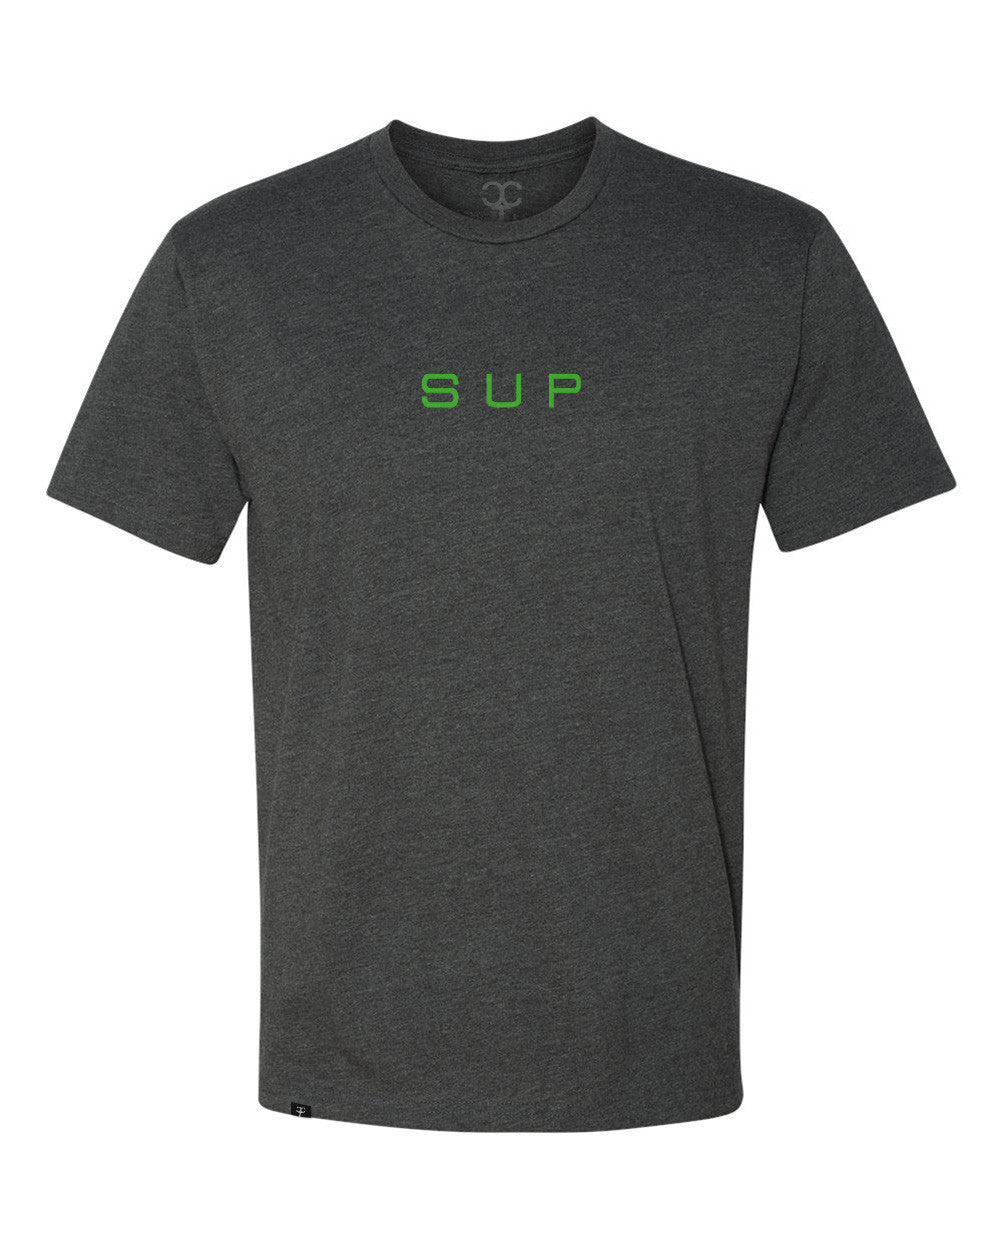 SUP Up Paddling T-Shirts – Specific Tshirts, LLC